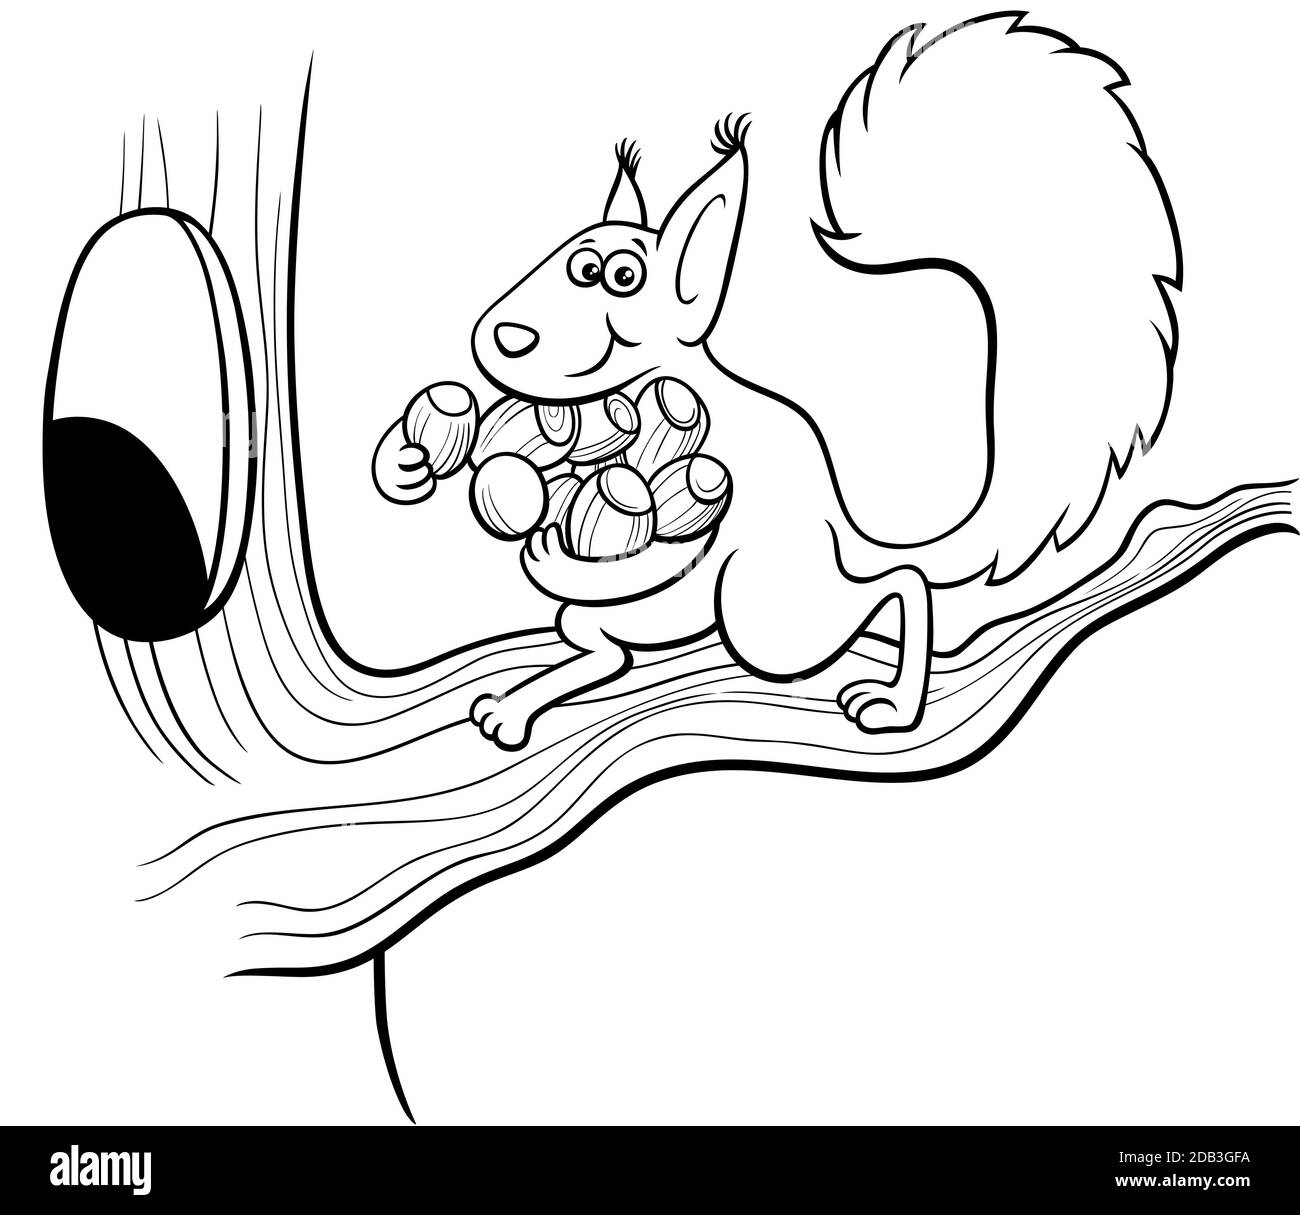 Dibujo de dibujos animados en blanco y negro de carácter animal ardilla divertido llevar bellotas al hueco en el libro de colores del árbol página Ilustración del Vector